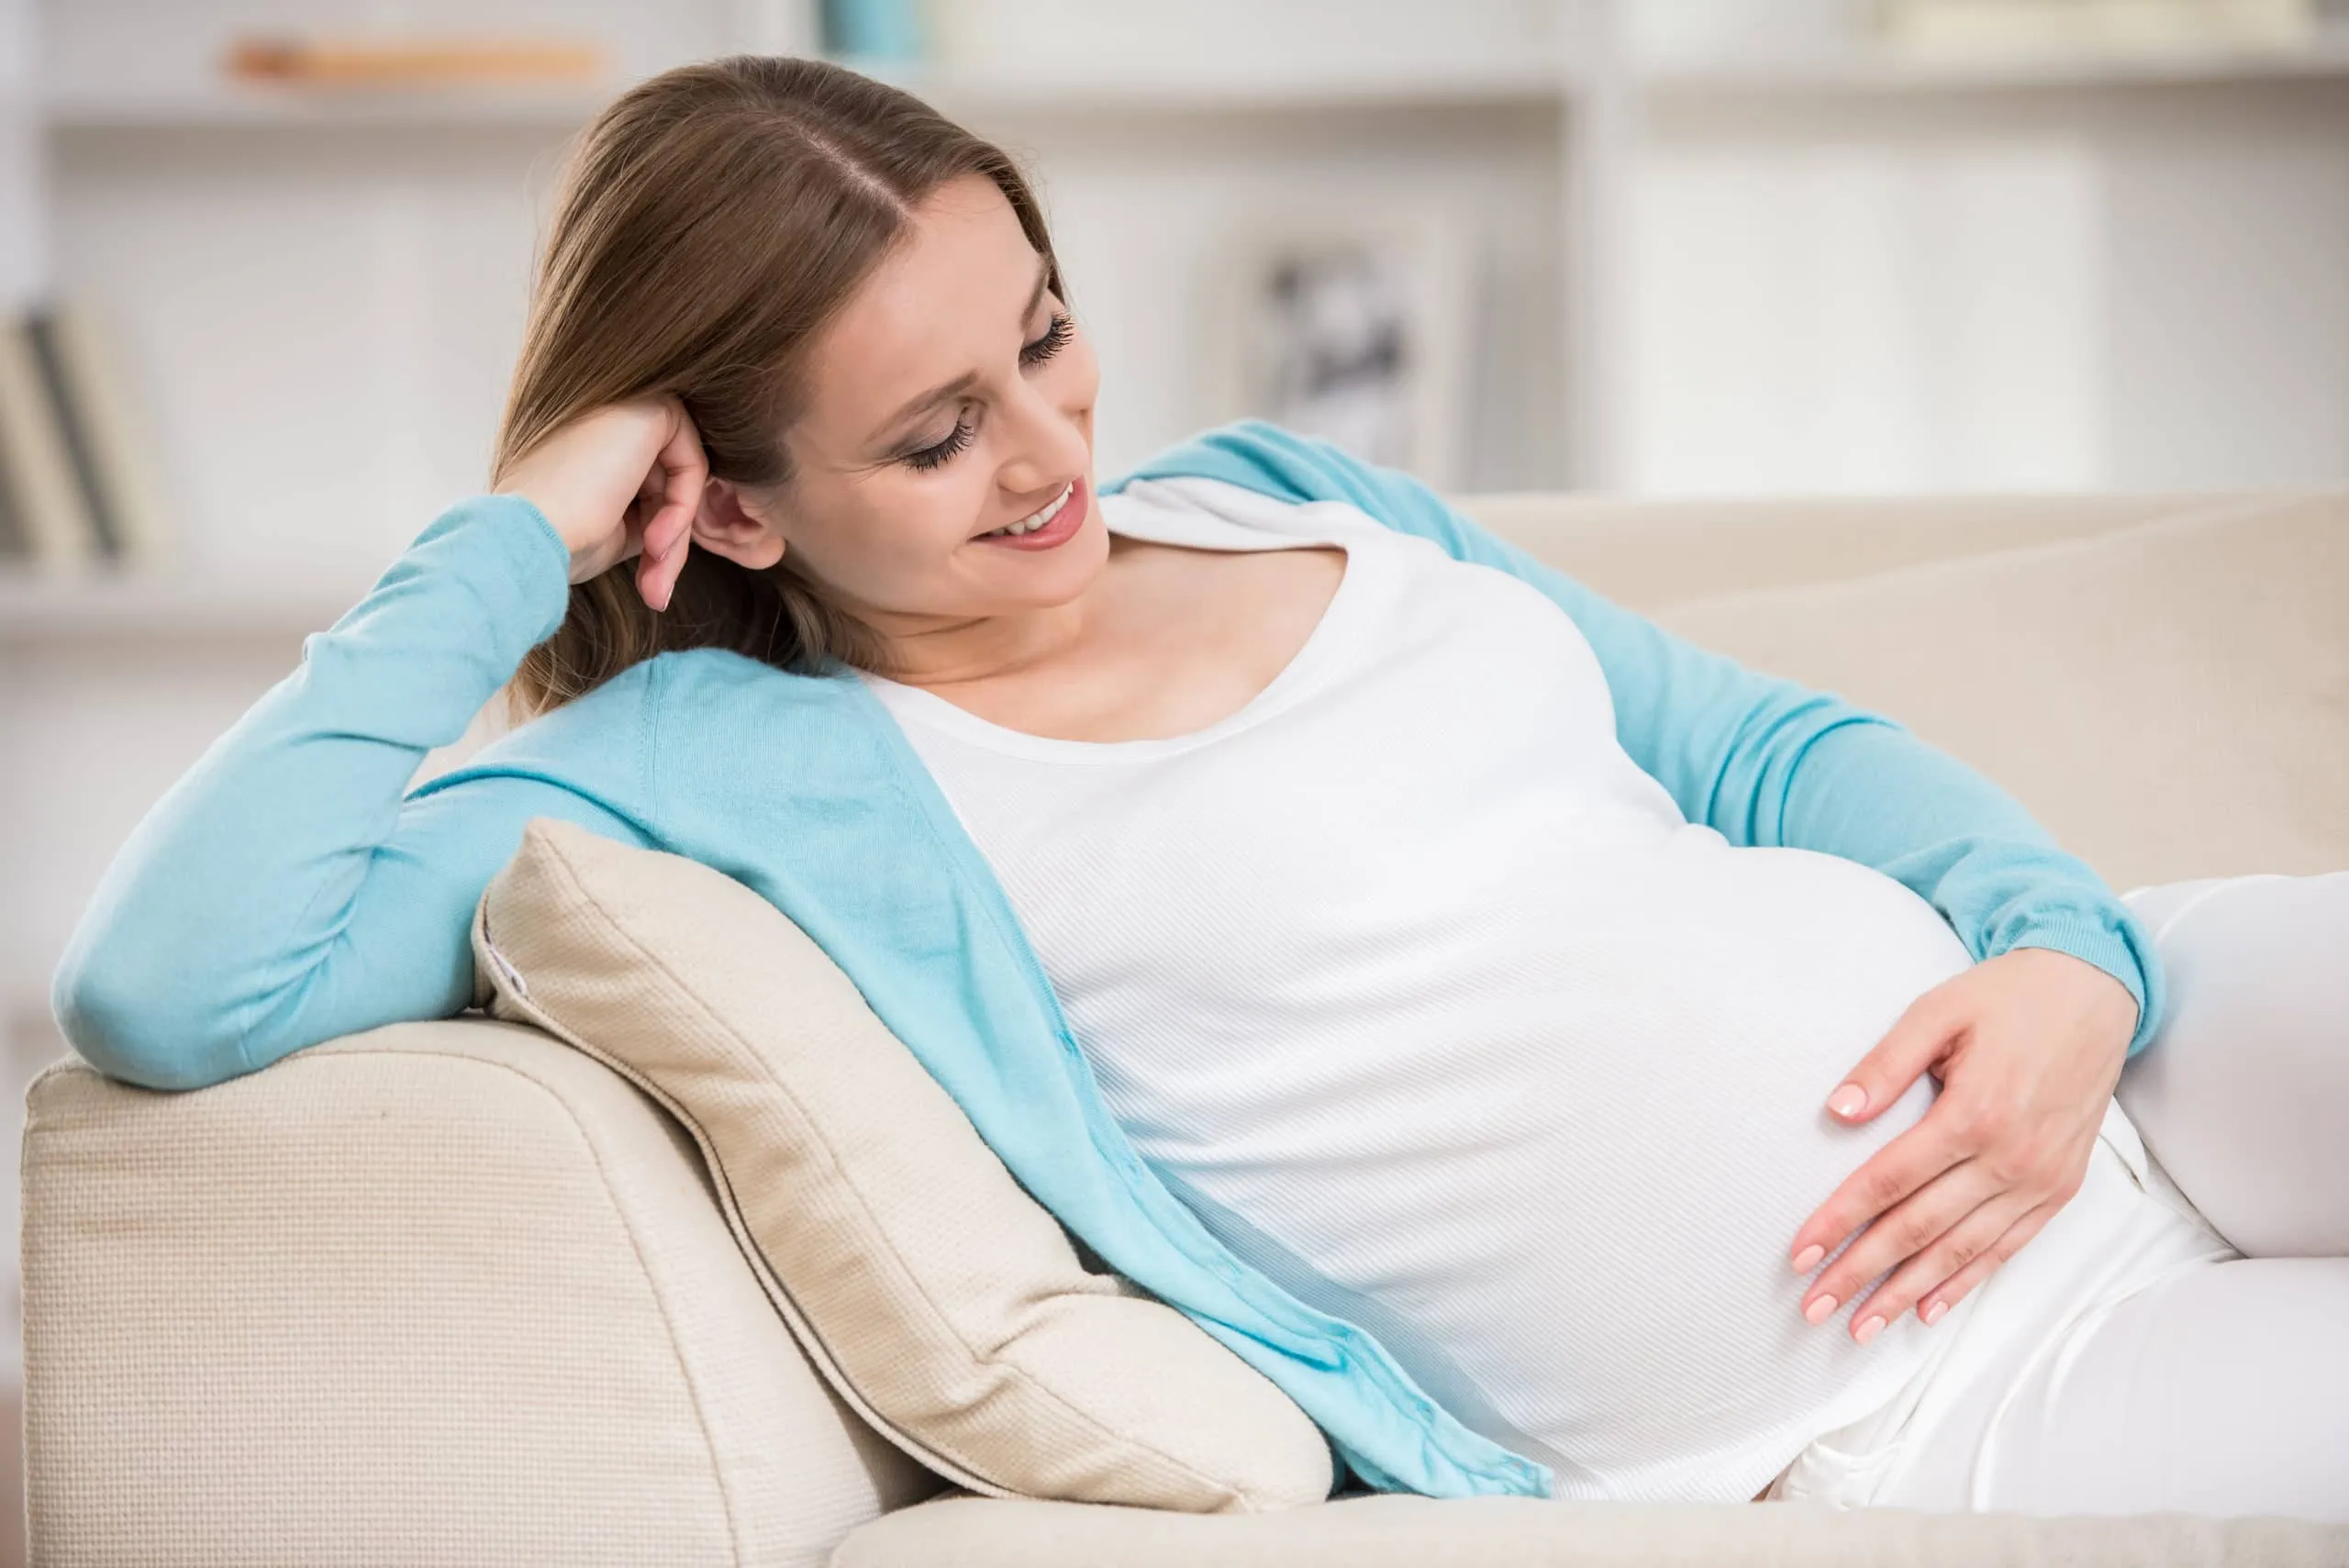 نصائح لنظام غذائي صحي خلال الشهر الرابع  من الحمل